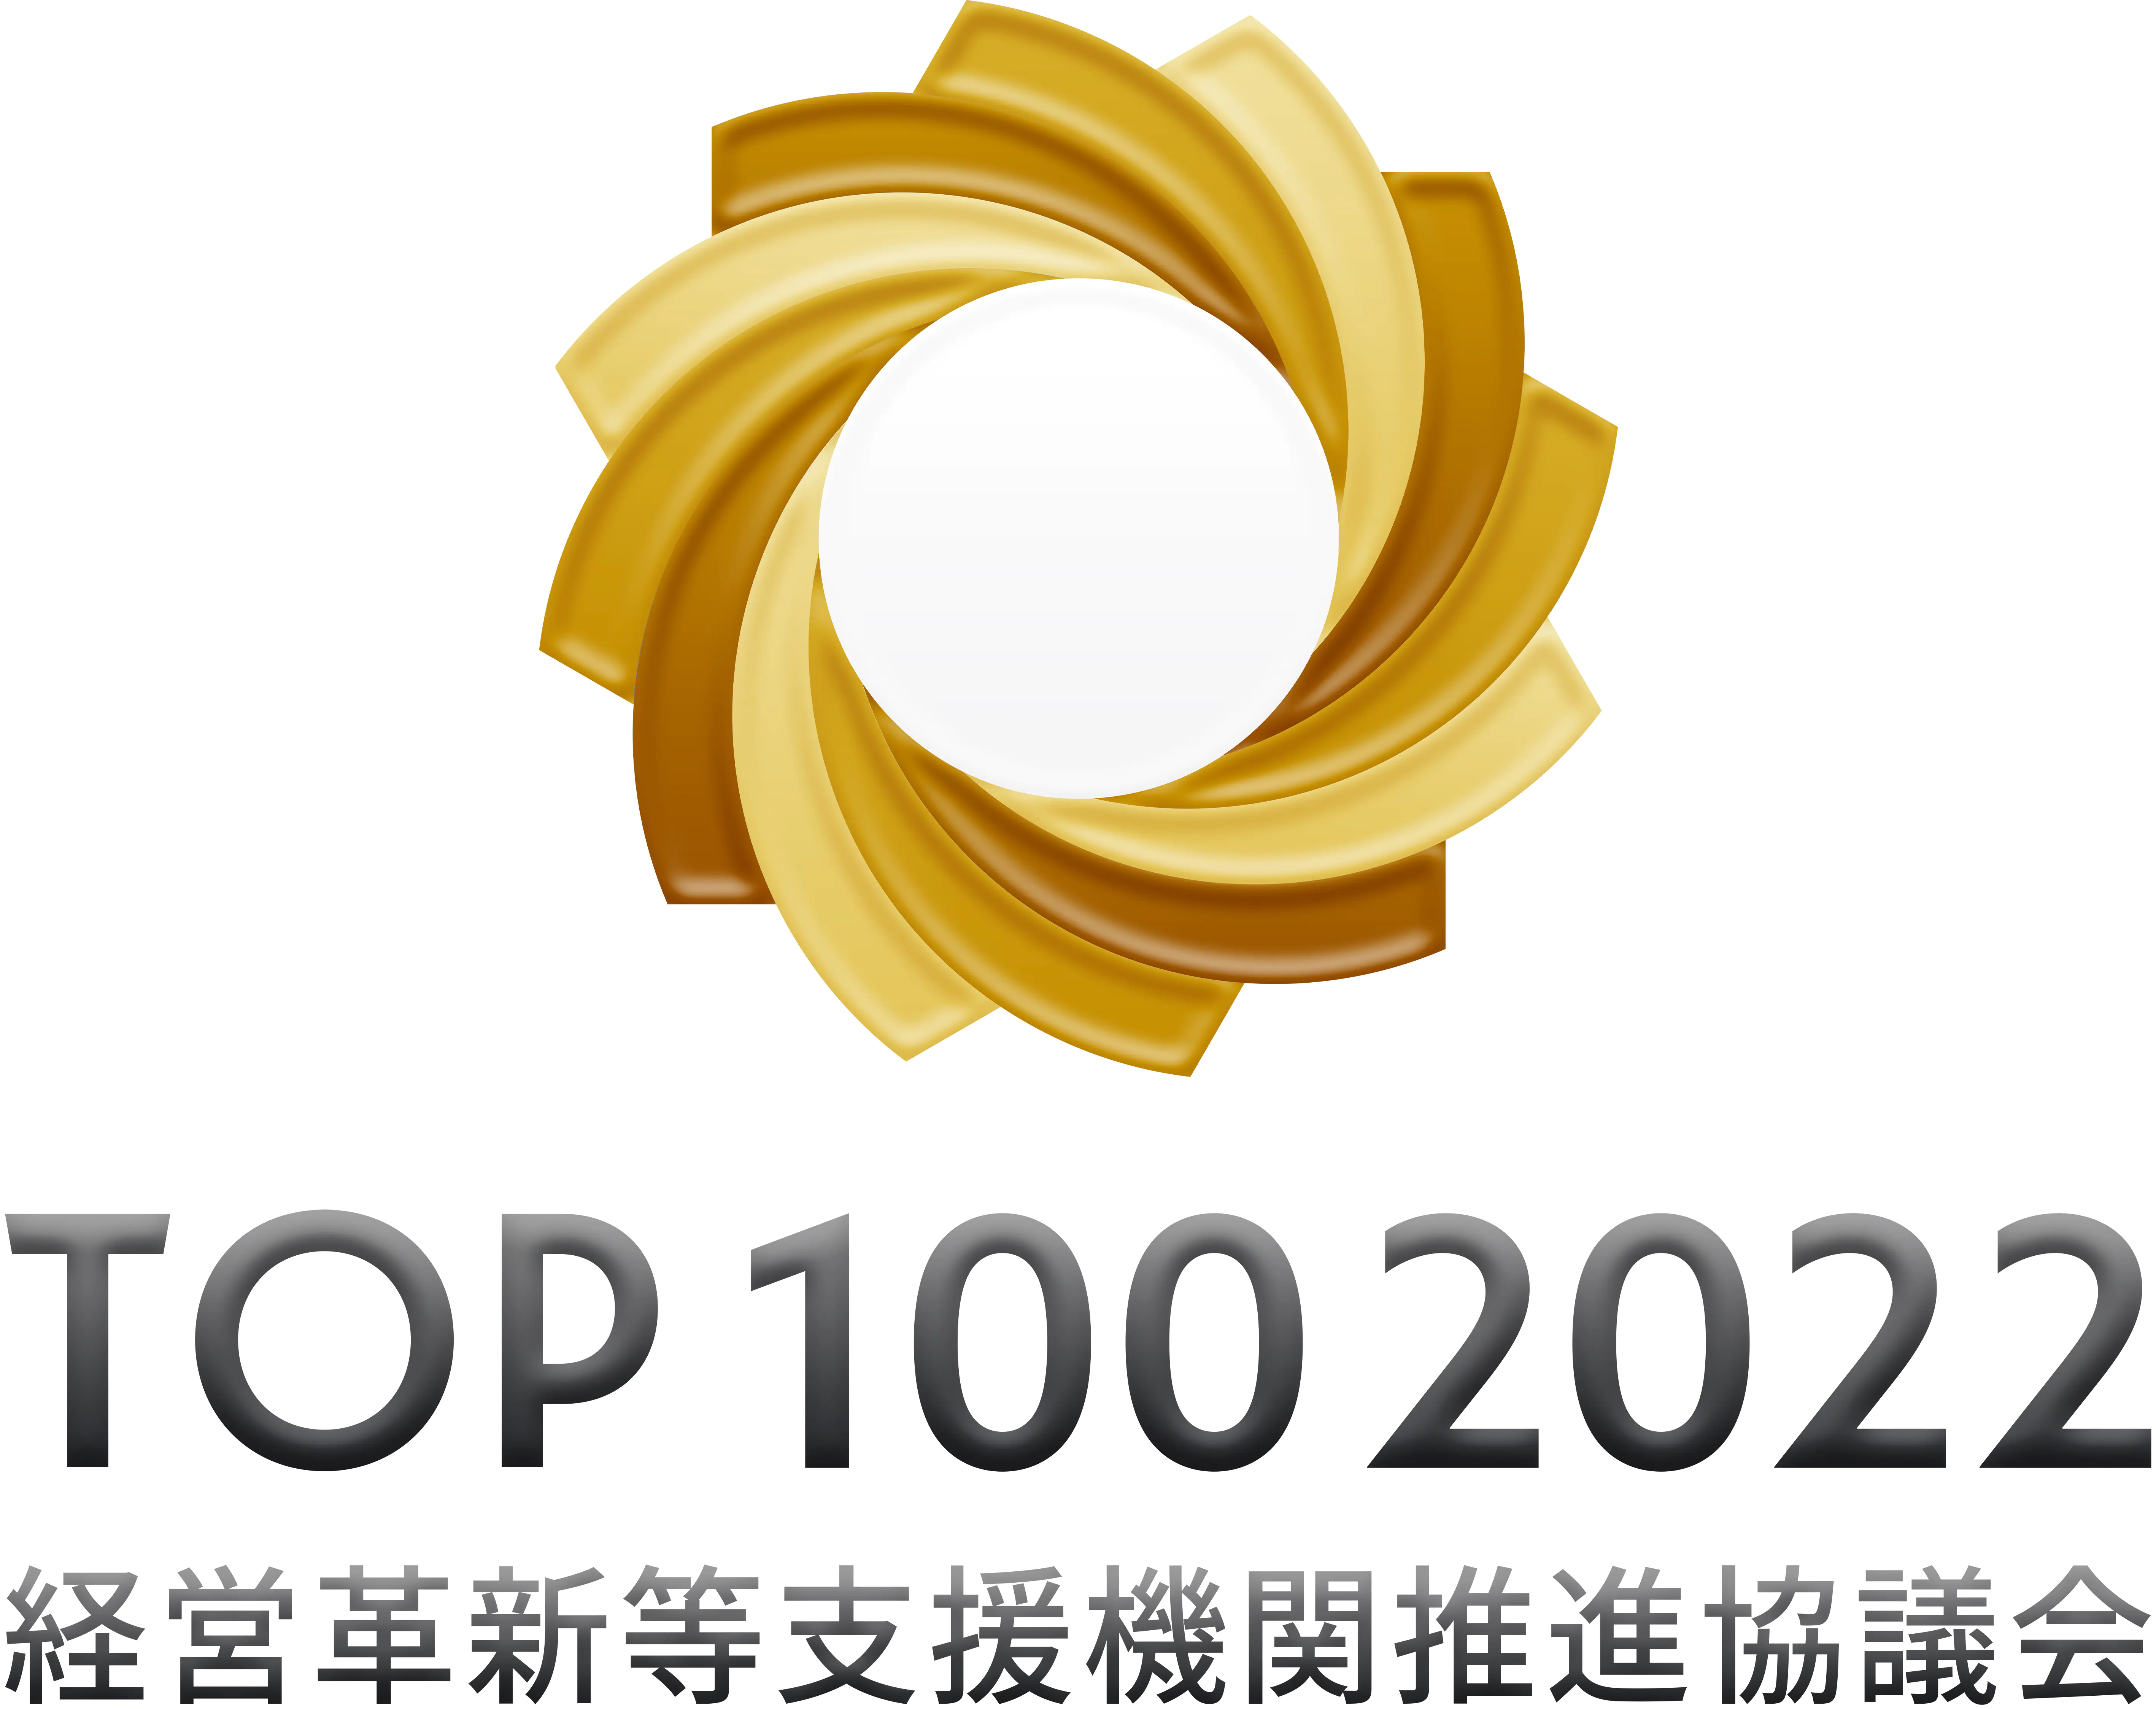 TOP100 2022